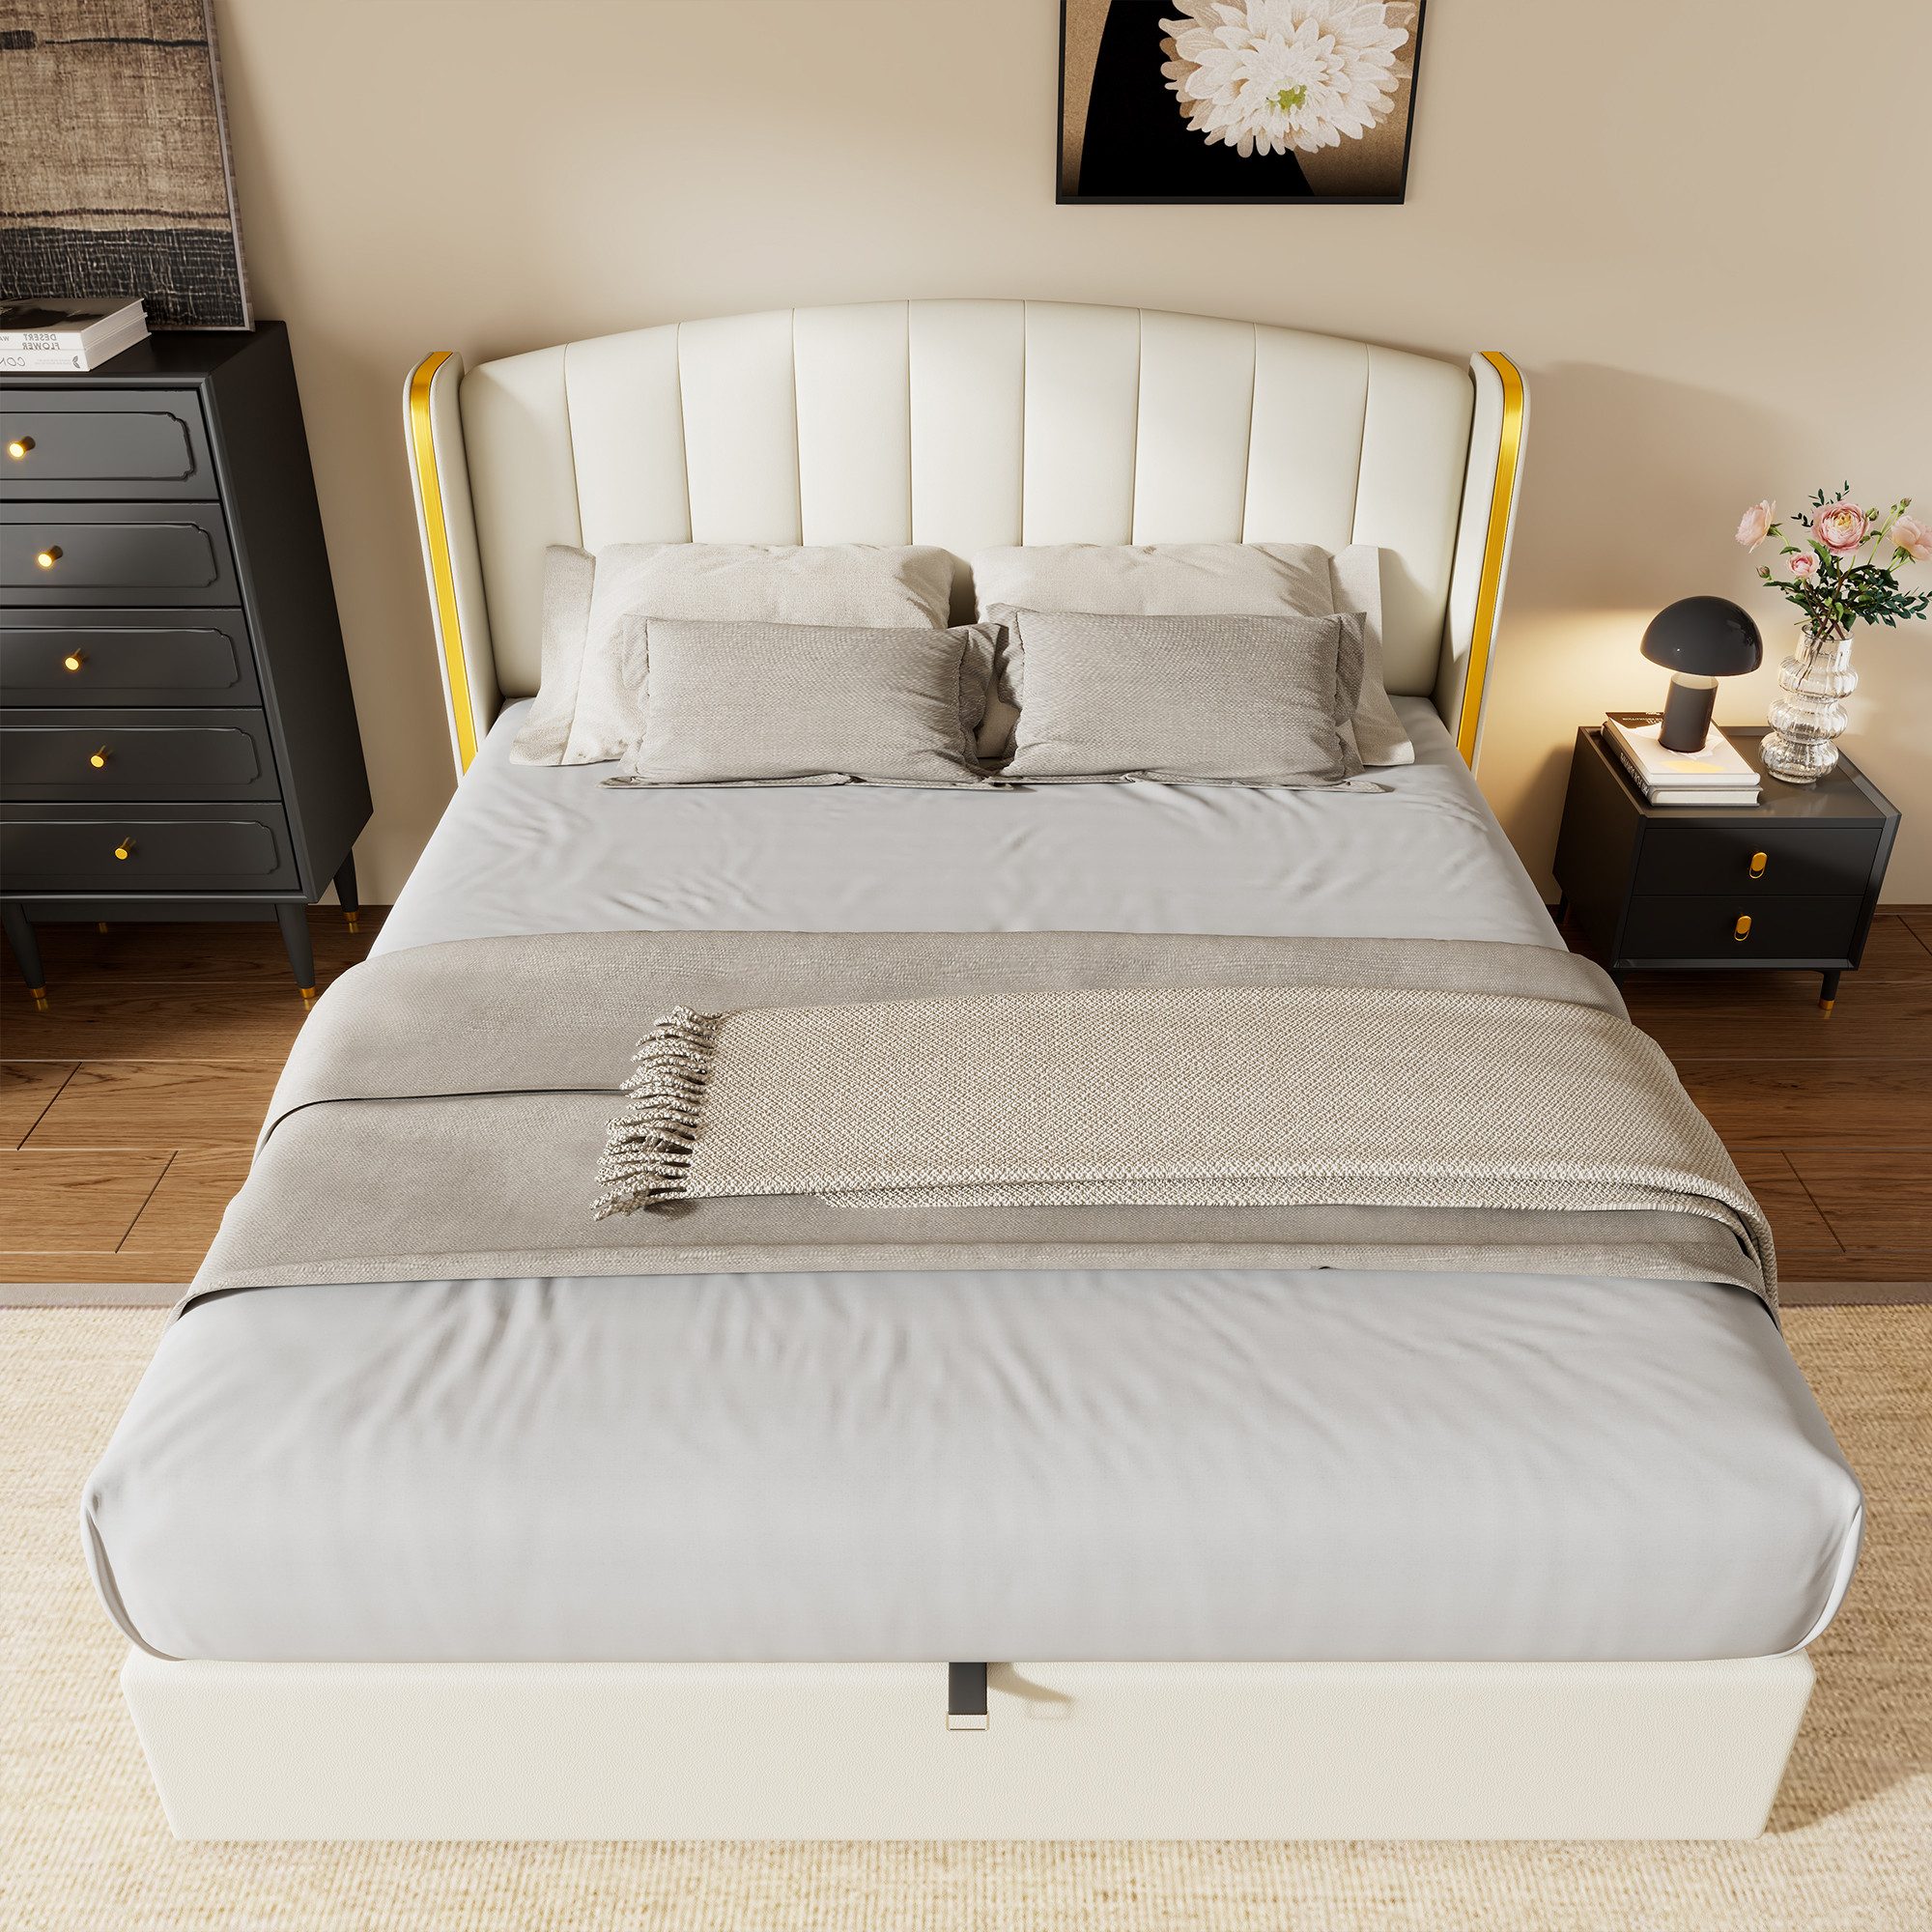 OKWISH Polsterbett Hydraulisches Bett (160*200cm), mit goldgerandetes Ohrendesign, Bettkasten, Lattenrost und Kopfteil